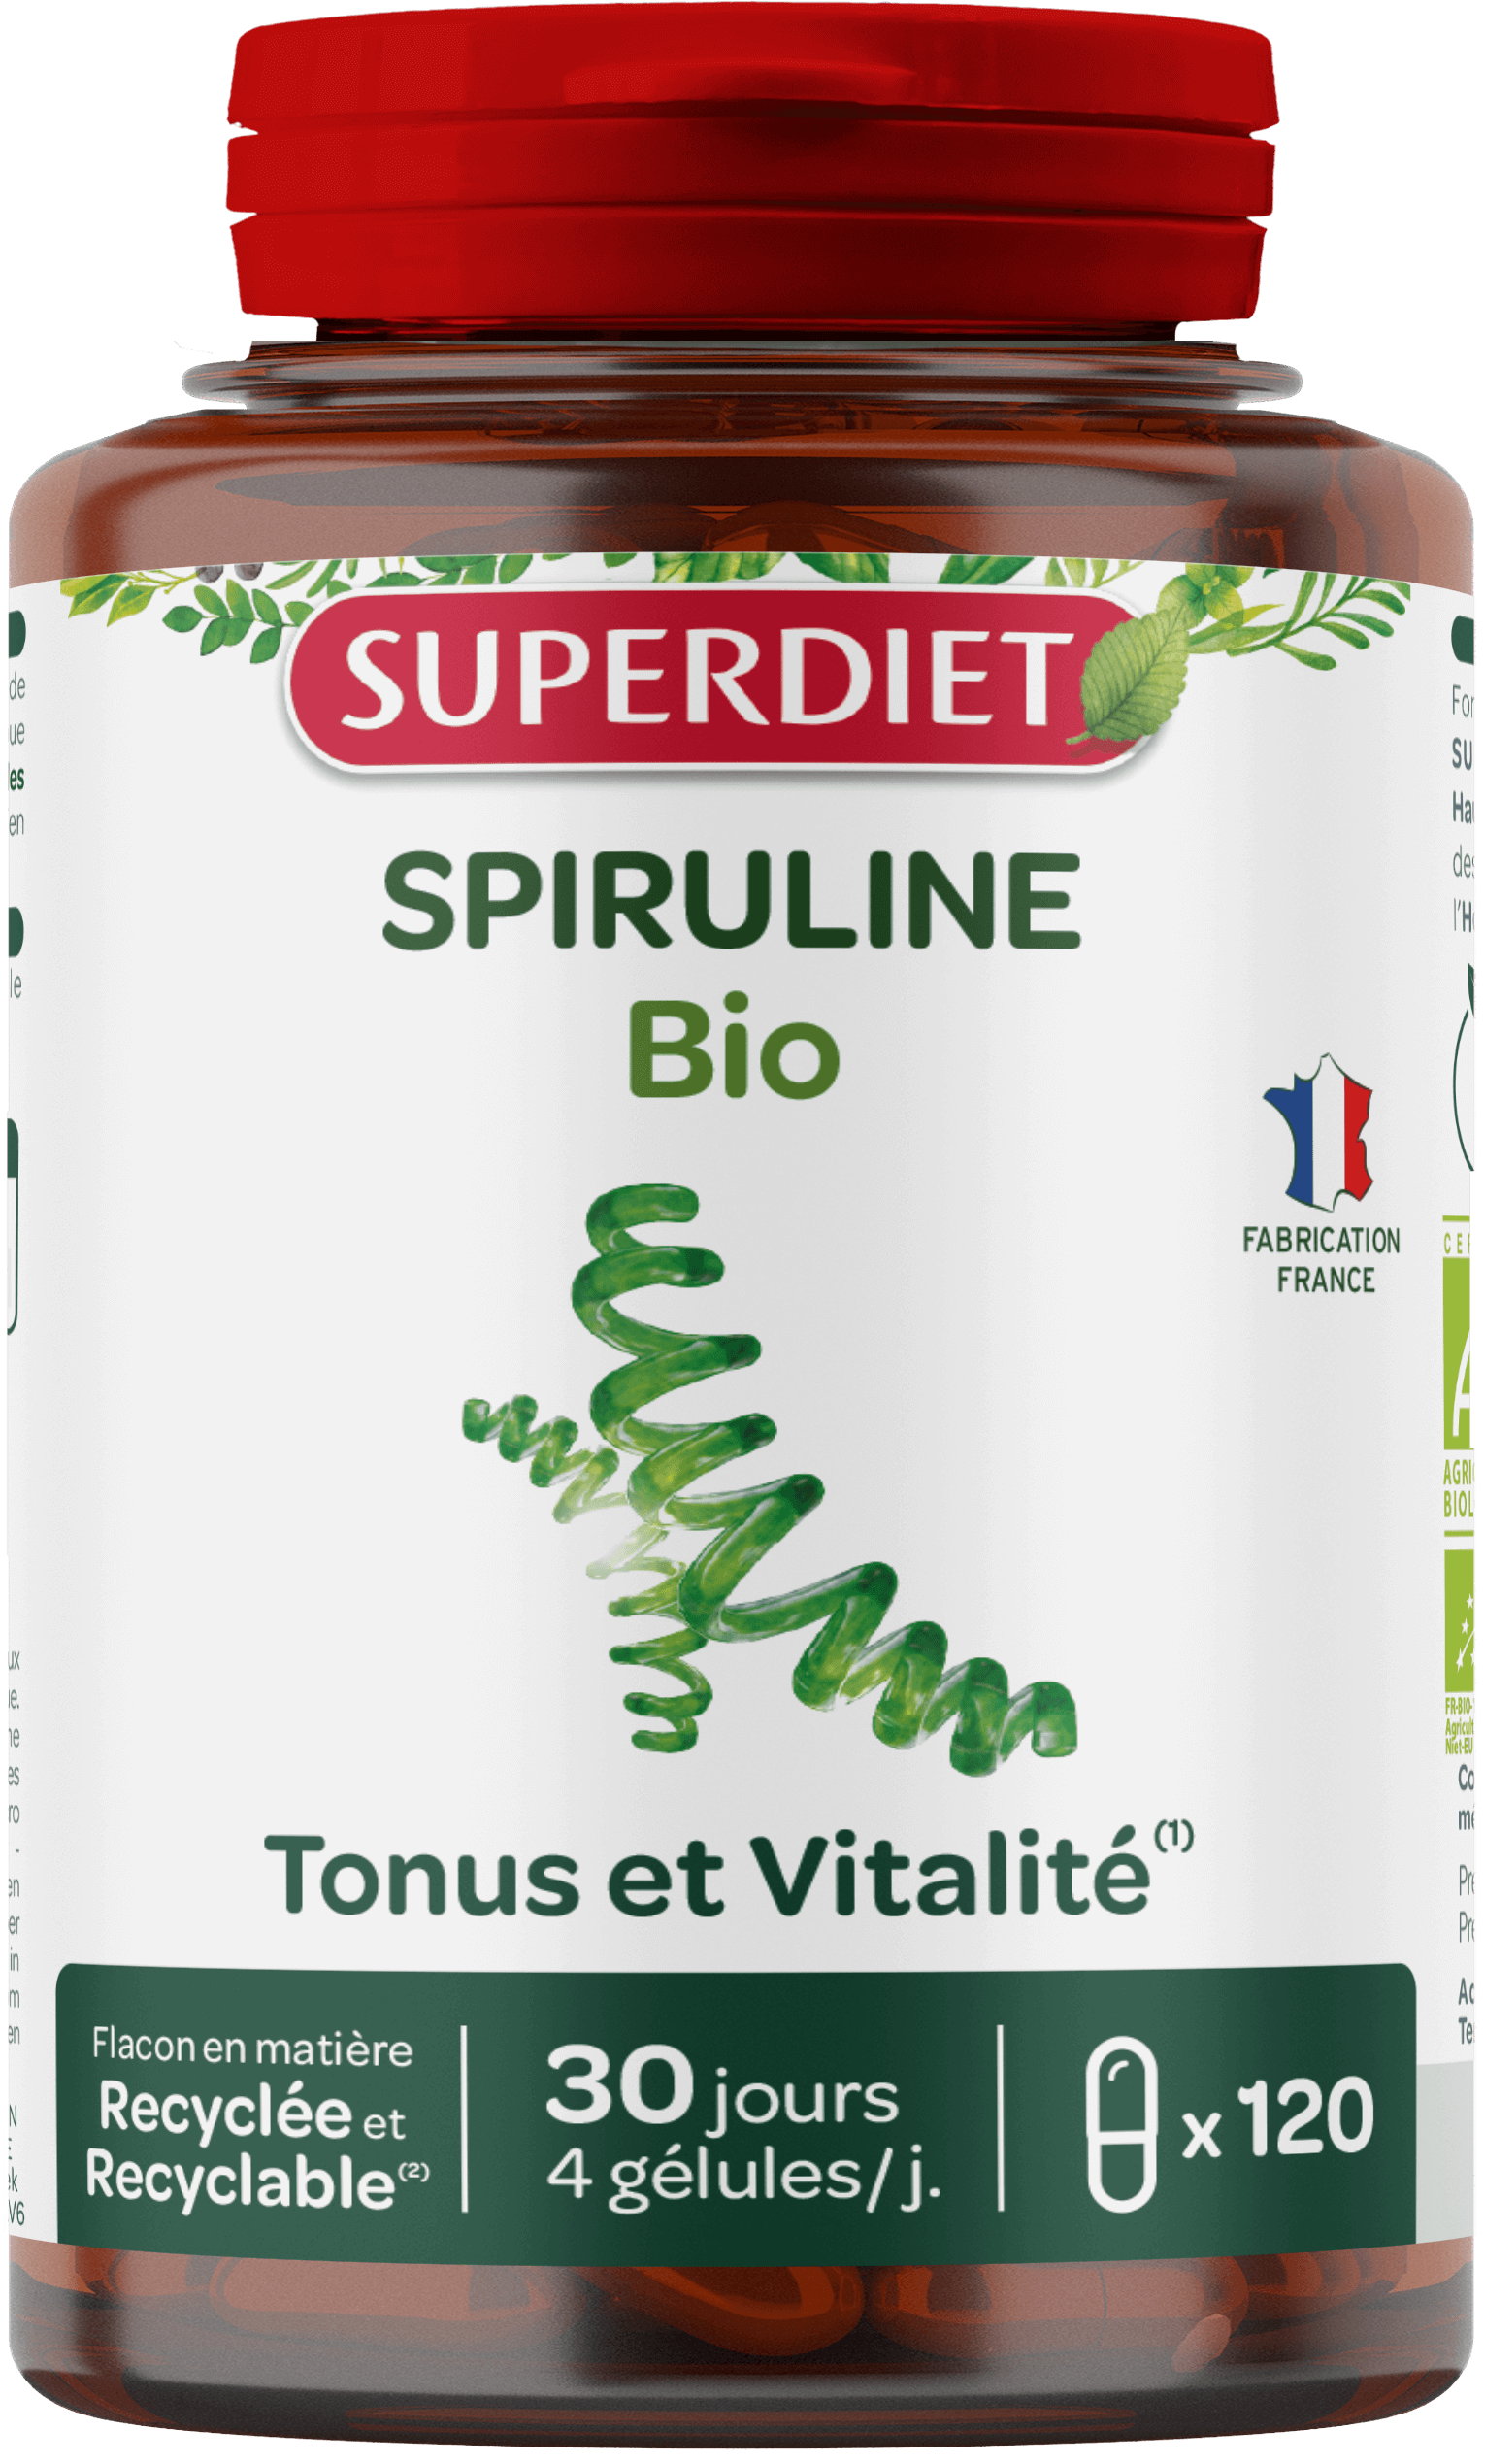 Super Diet Spirulina bio 120caps PL 483/354